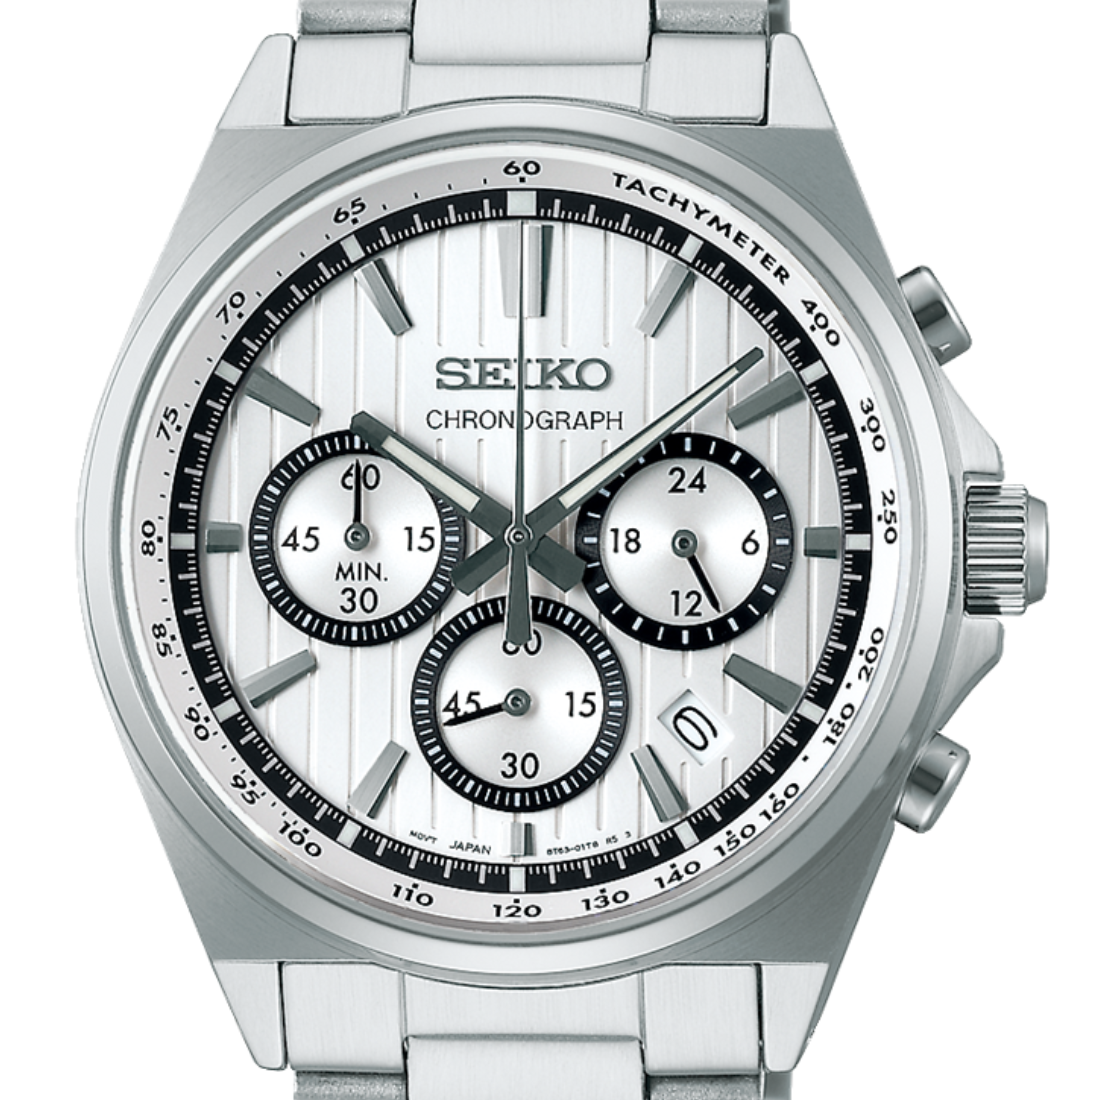 Seiko Selection S-Series SBTR031J SBTR031 Silver Dial Chronograph Watch (PRE-ORDER)